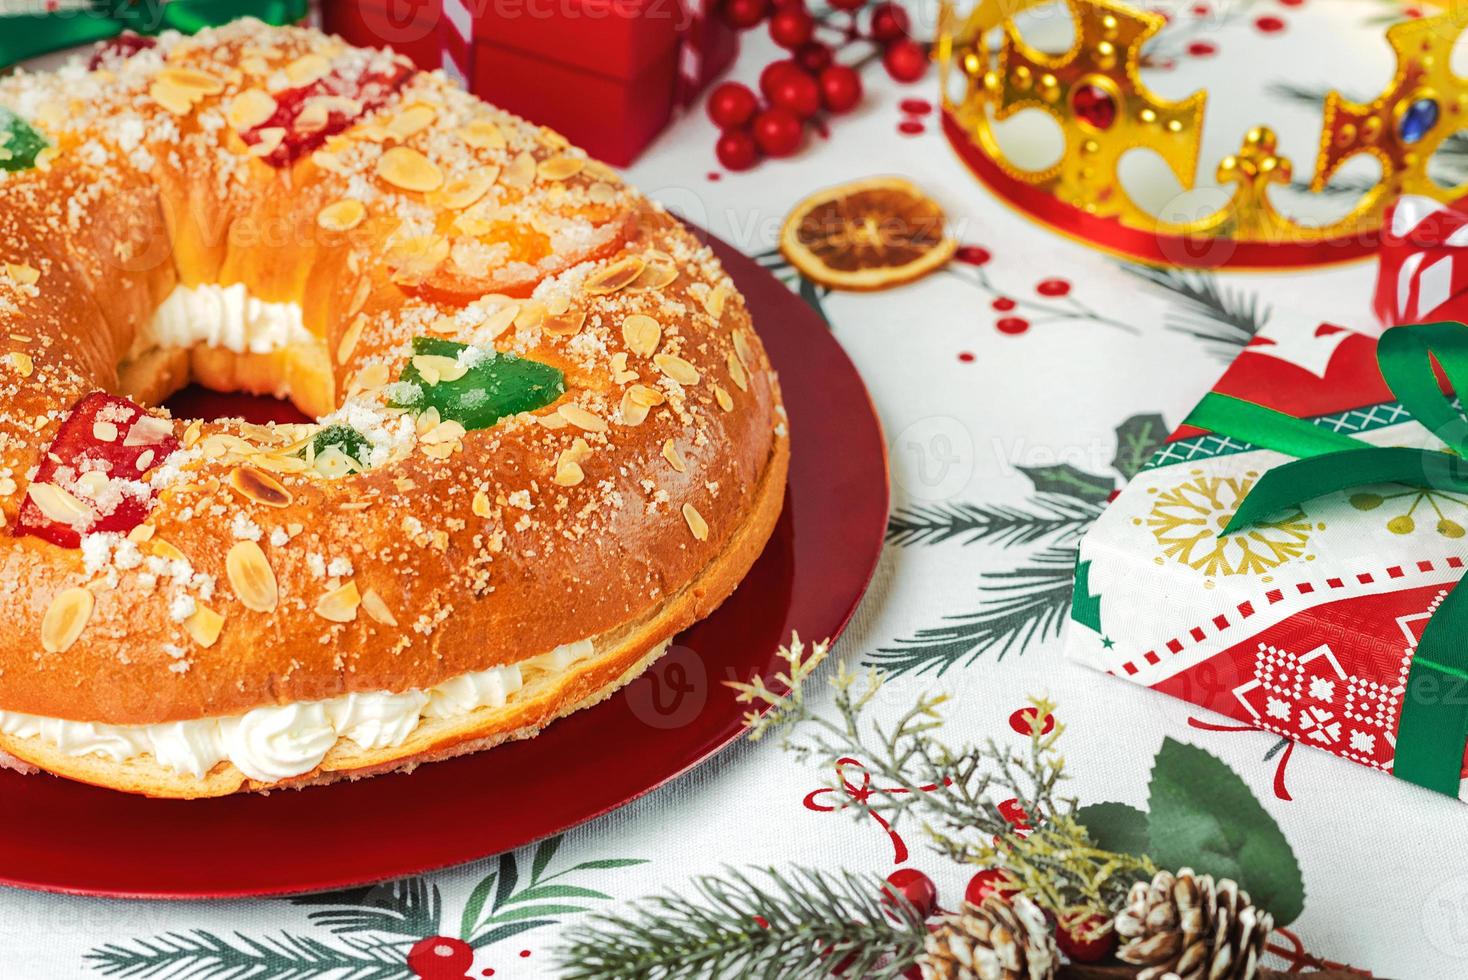 roscon de reyes com creme e enfeites de natal em um prato vermelho. conceito do dia dos reis bolo espanhol de três reis sobremesa espanhola típica para o natal foto